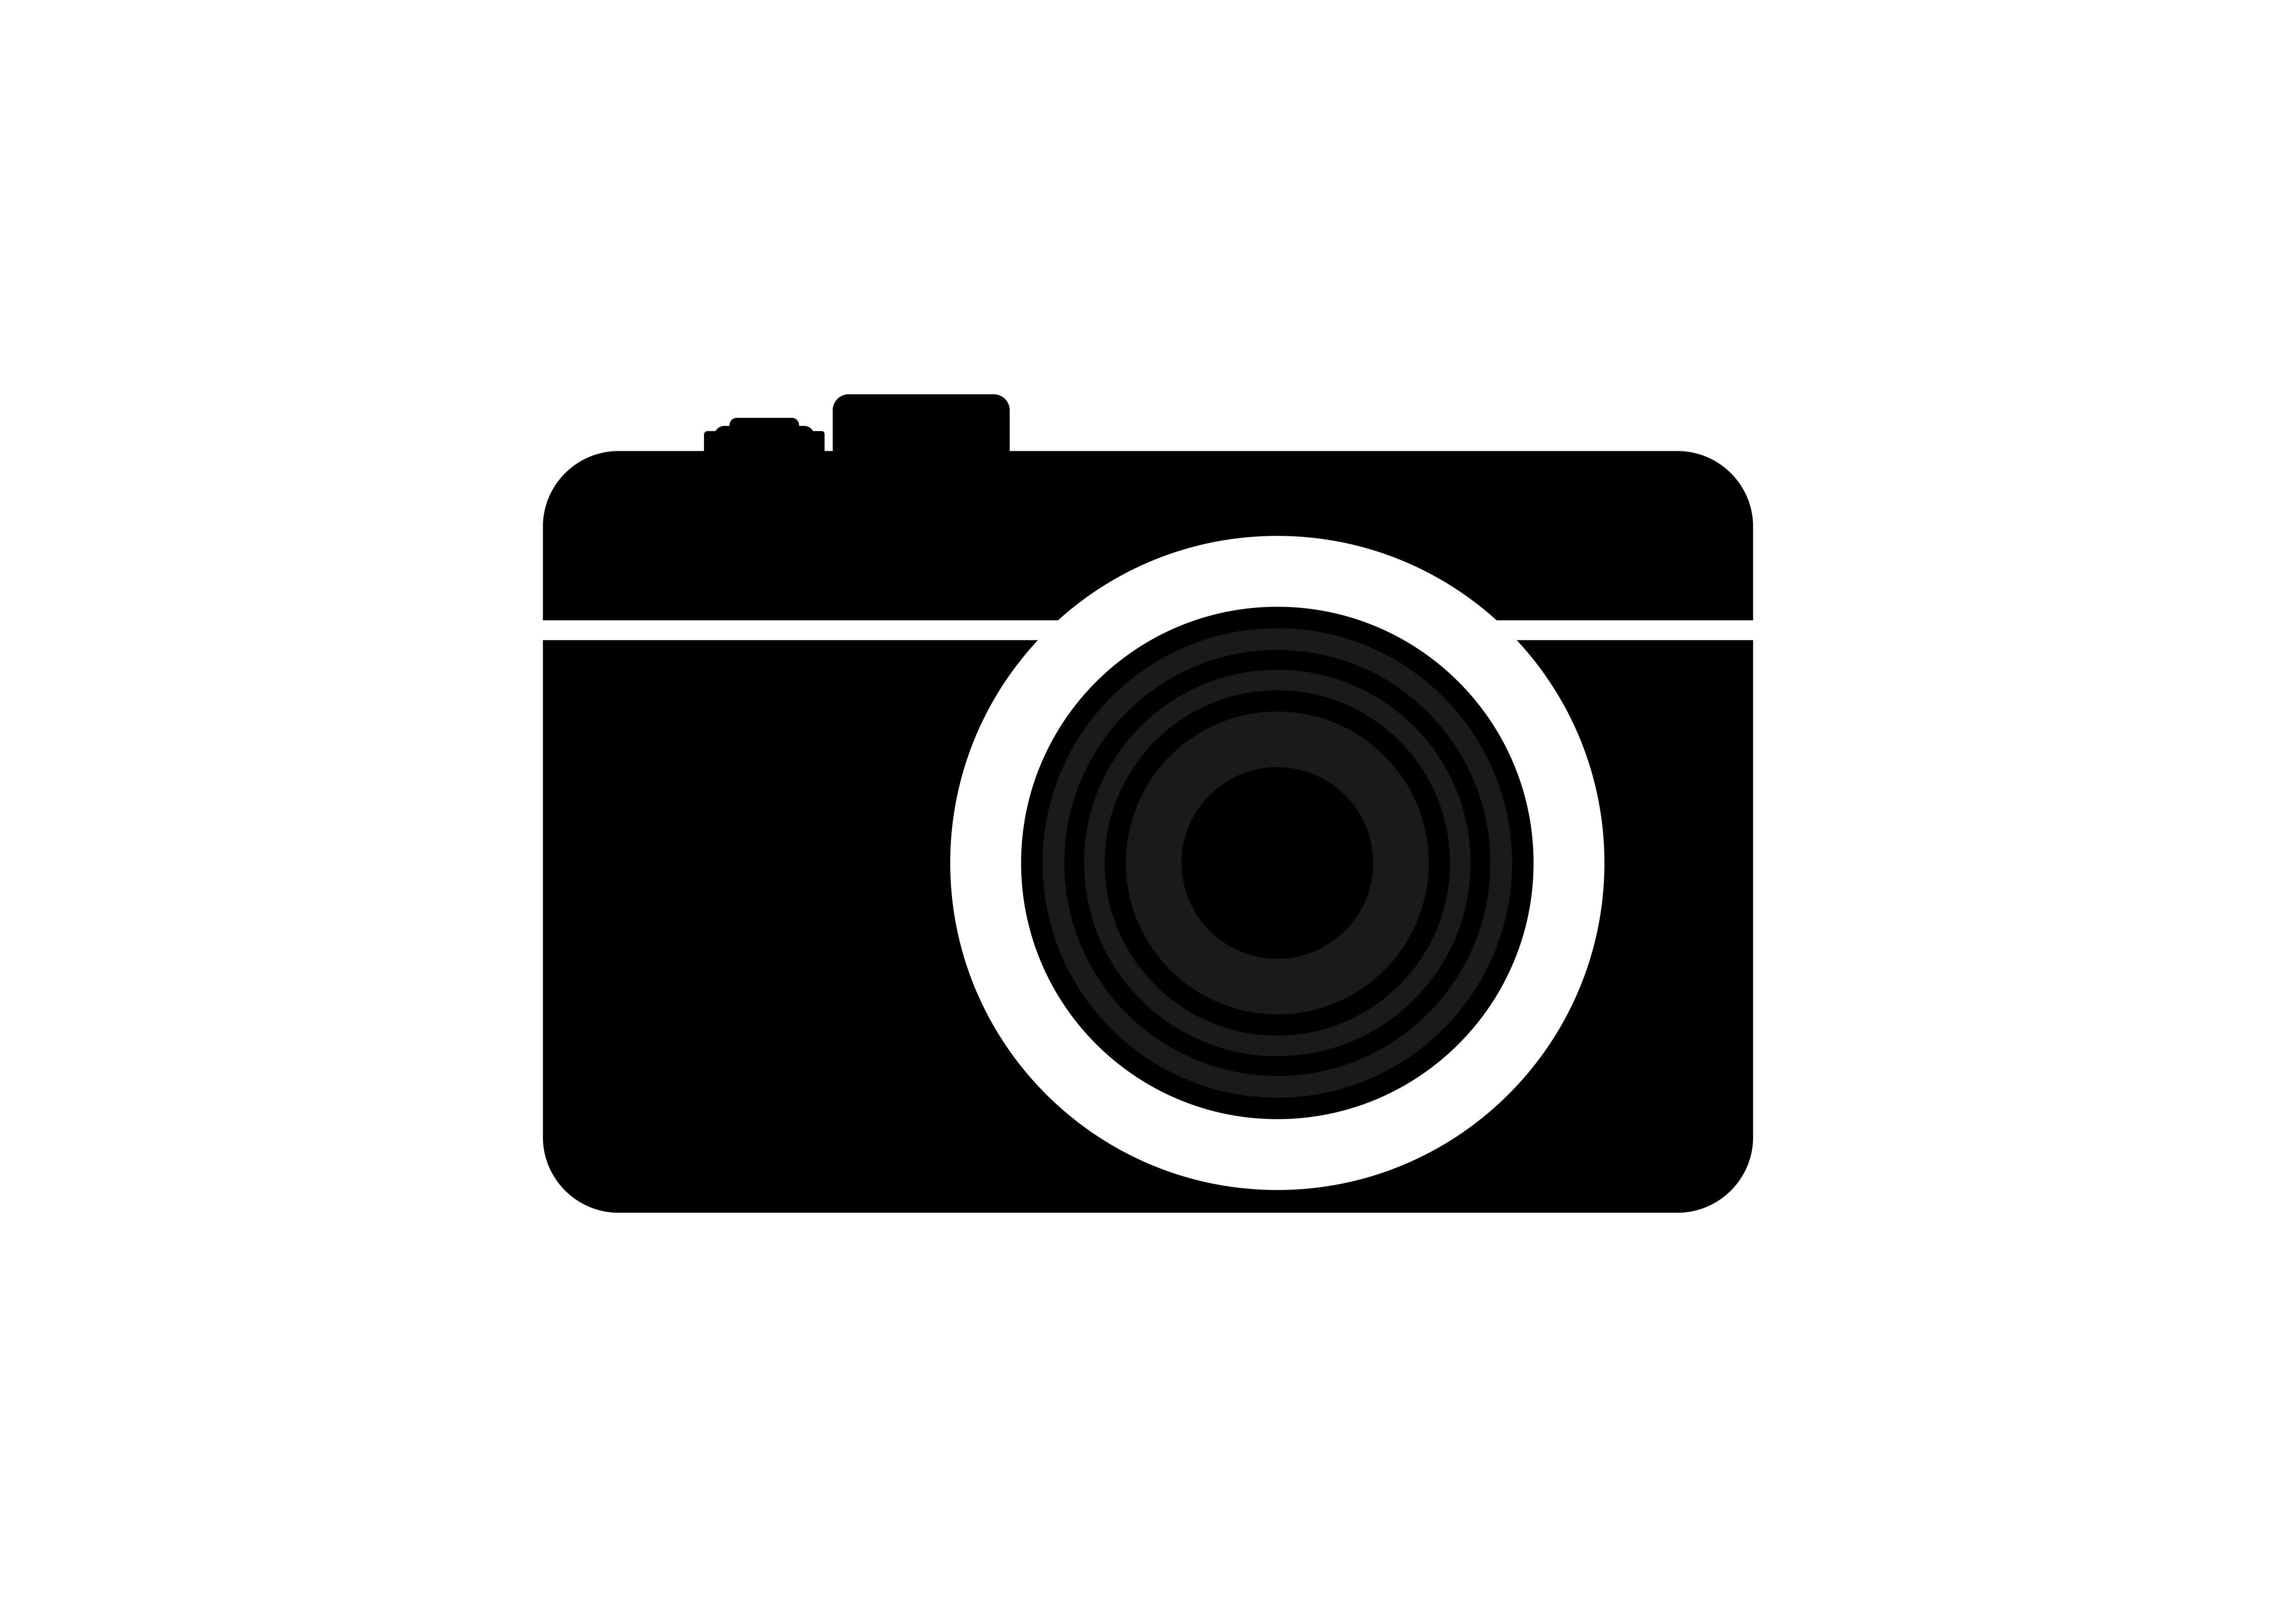 Camer Logo - Camera logo